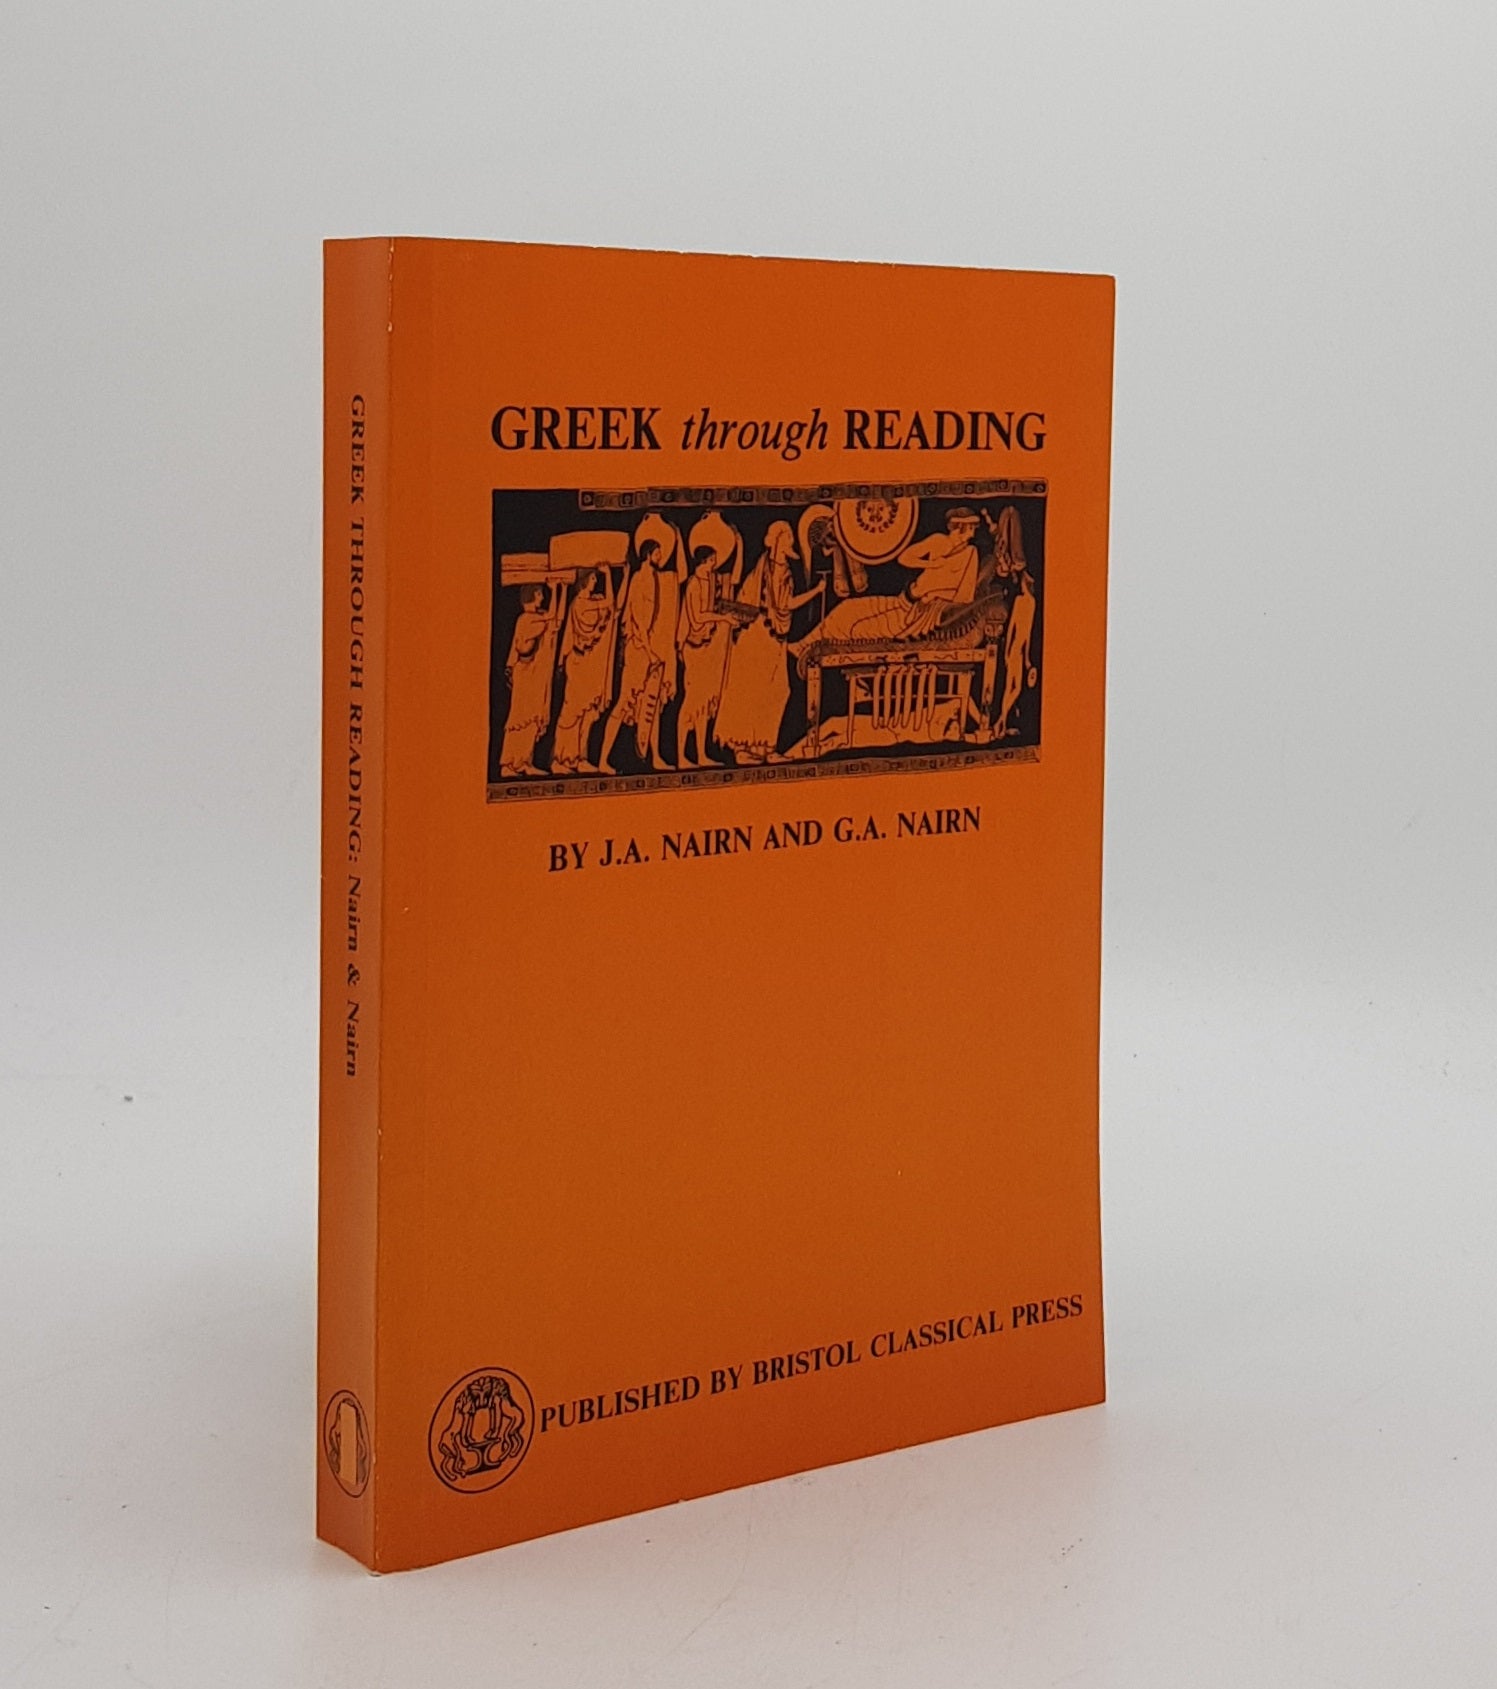 NAIRN J.A., NAIRN G.A. - Greek Through Reading